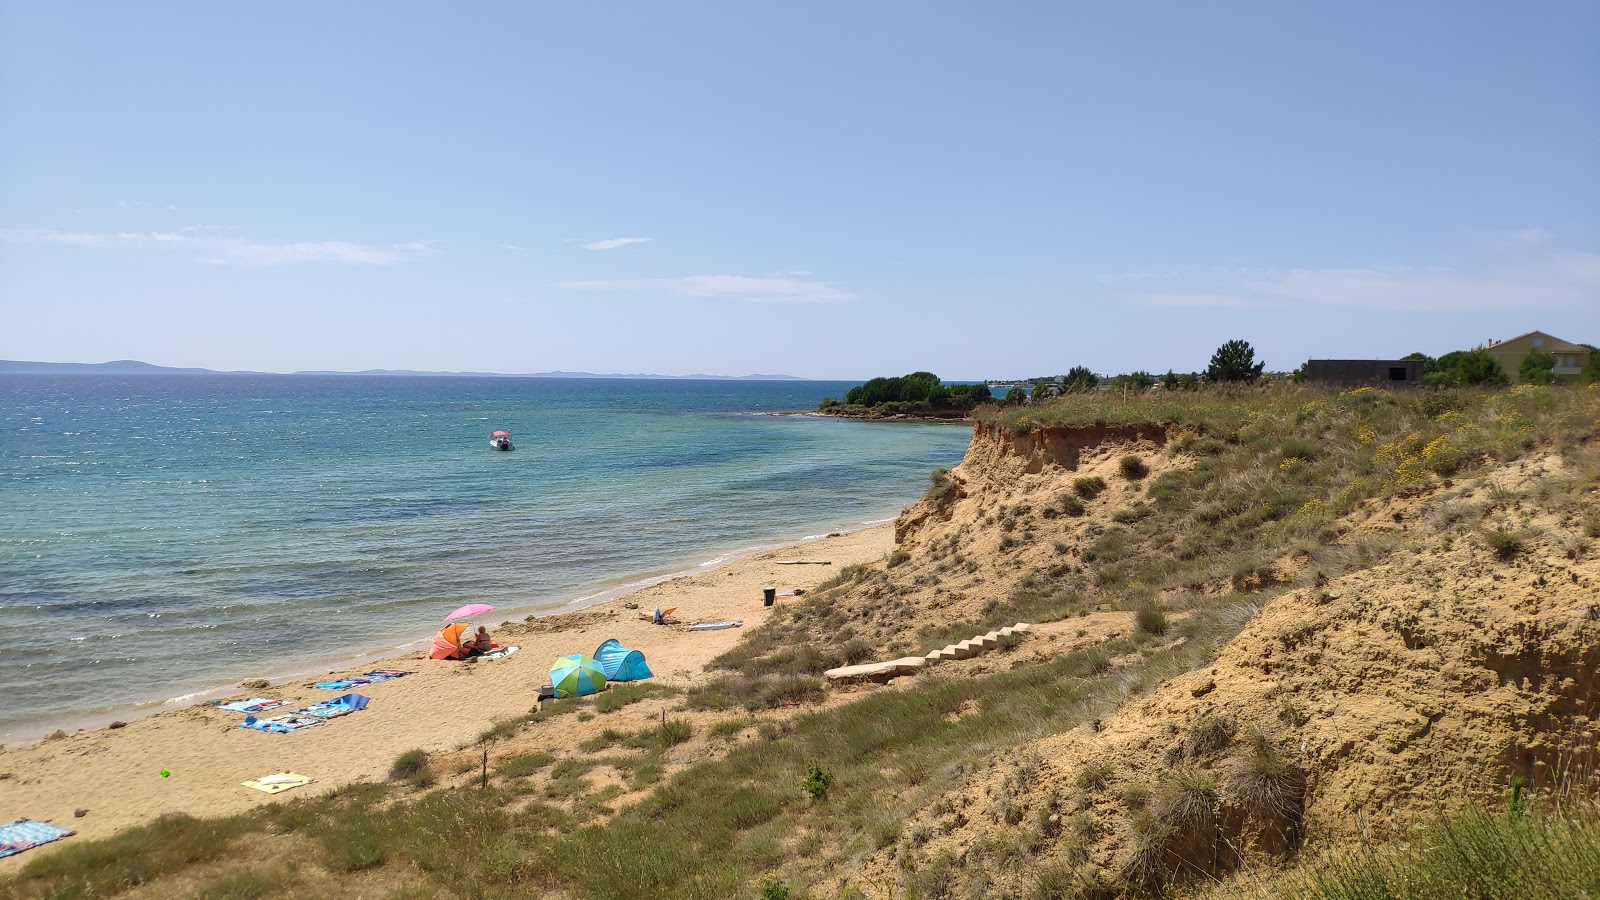 Fotografie cu Bilotinjak beach și peisajul său frumos